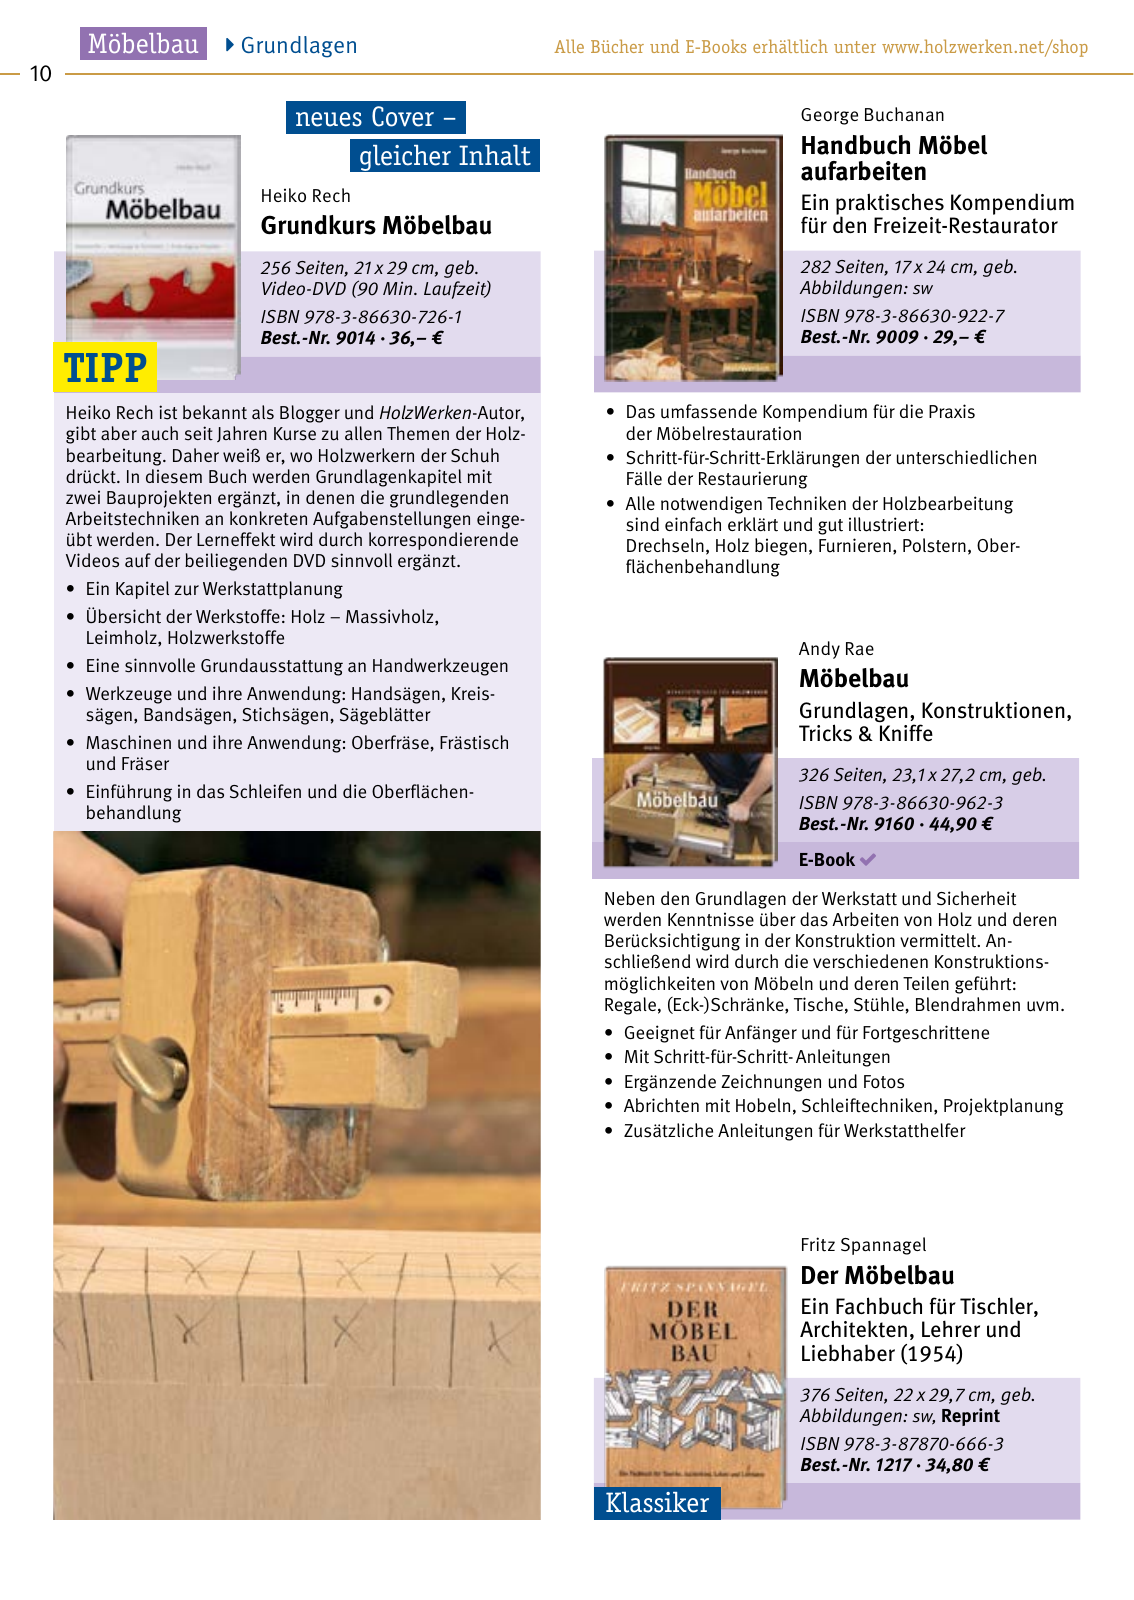 Vorschau HolzWerken Katalog 2021 Seite 10